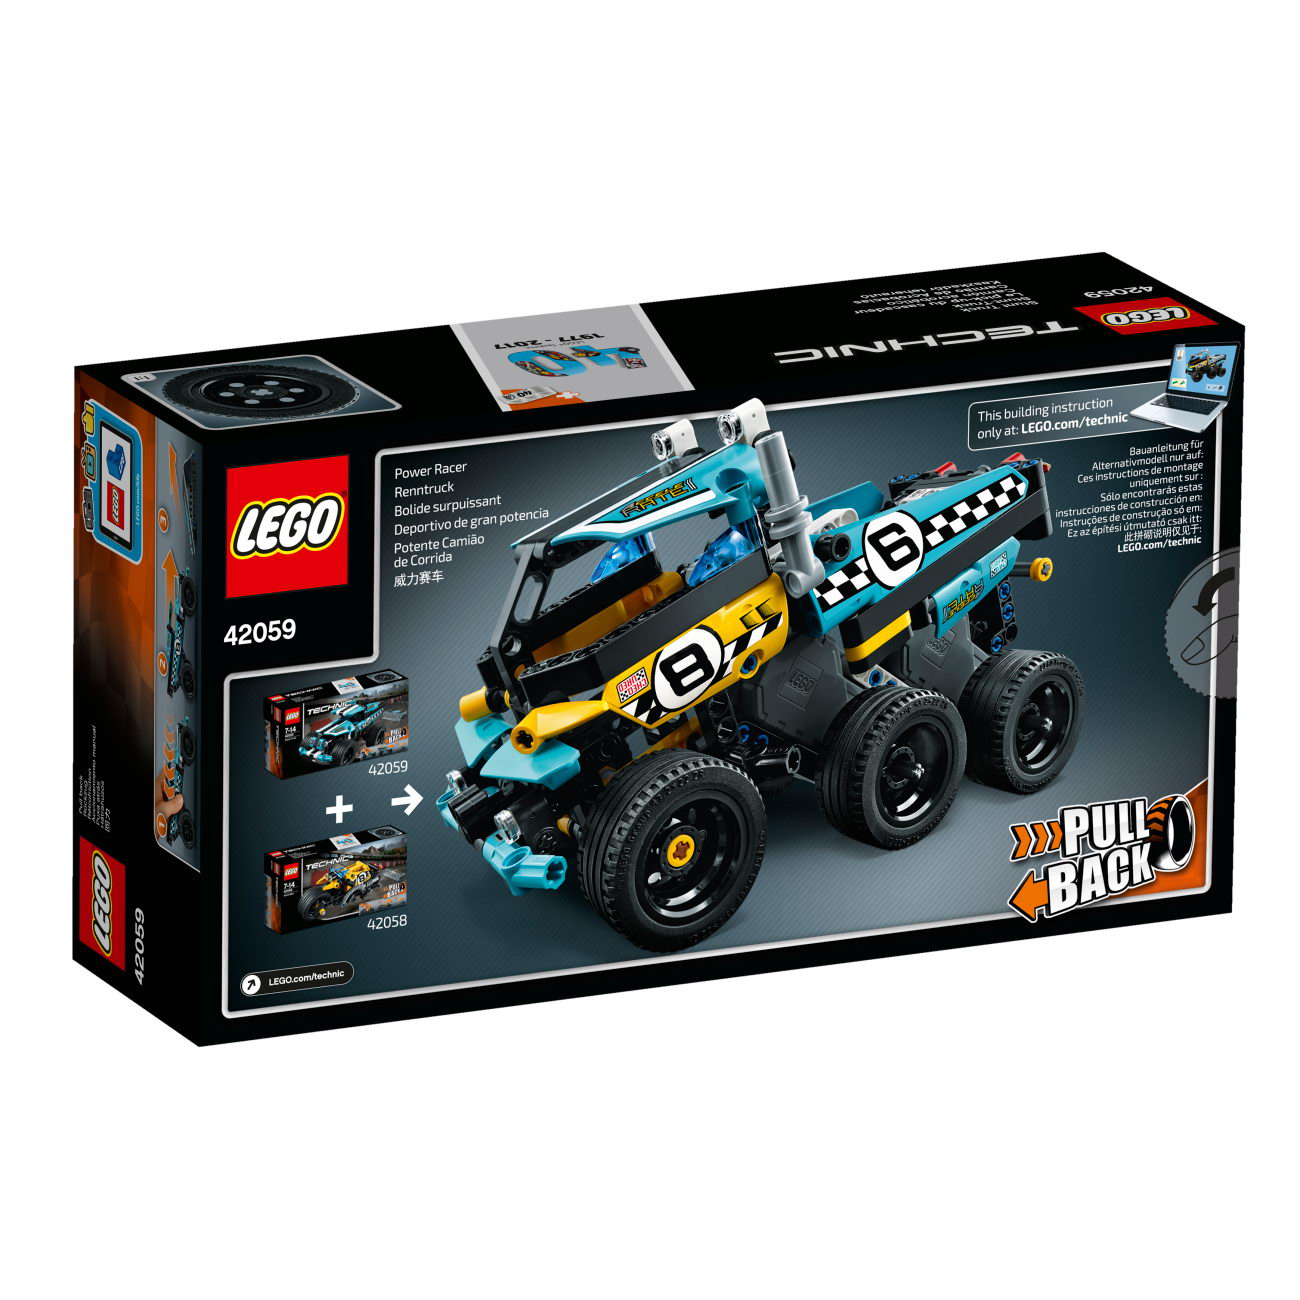 xxx-LEGO Technic 42059 - Stunt-Truck